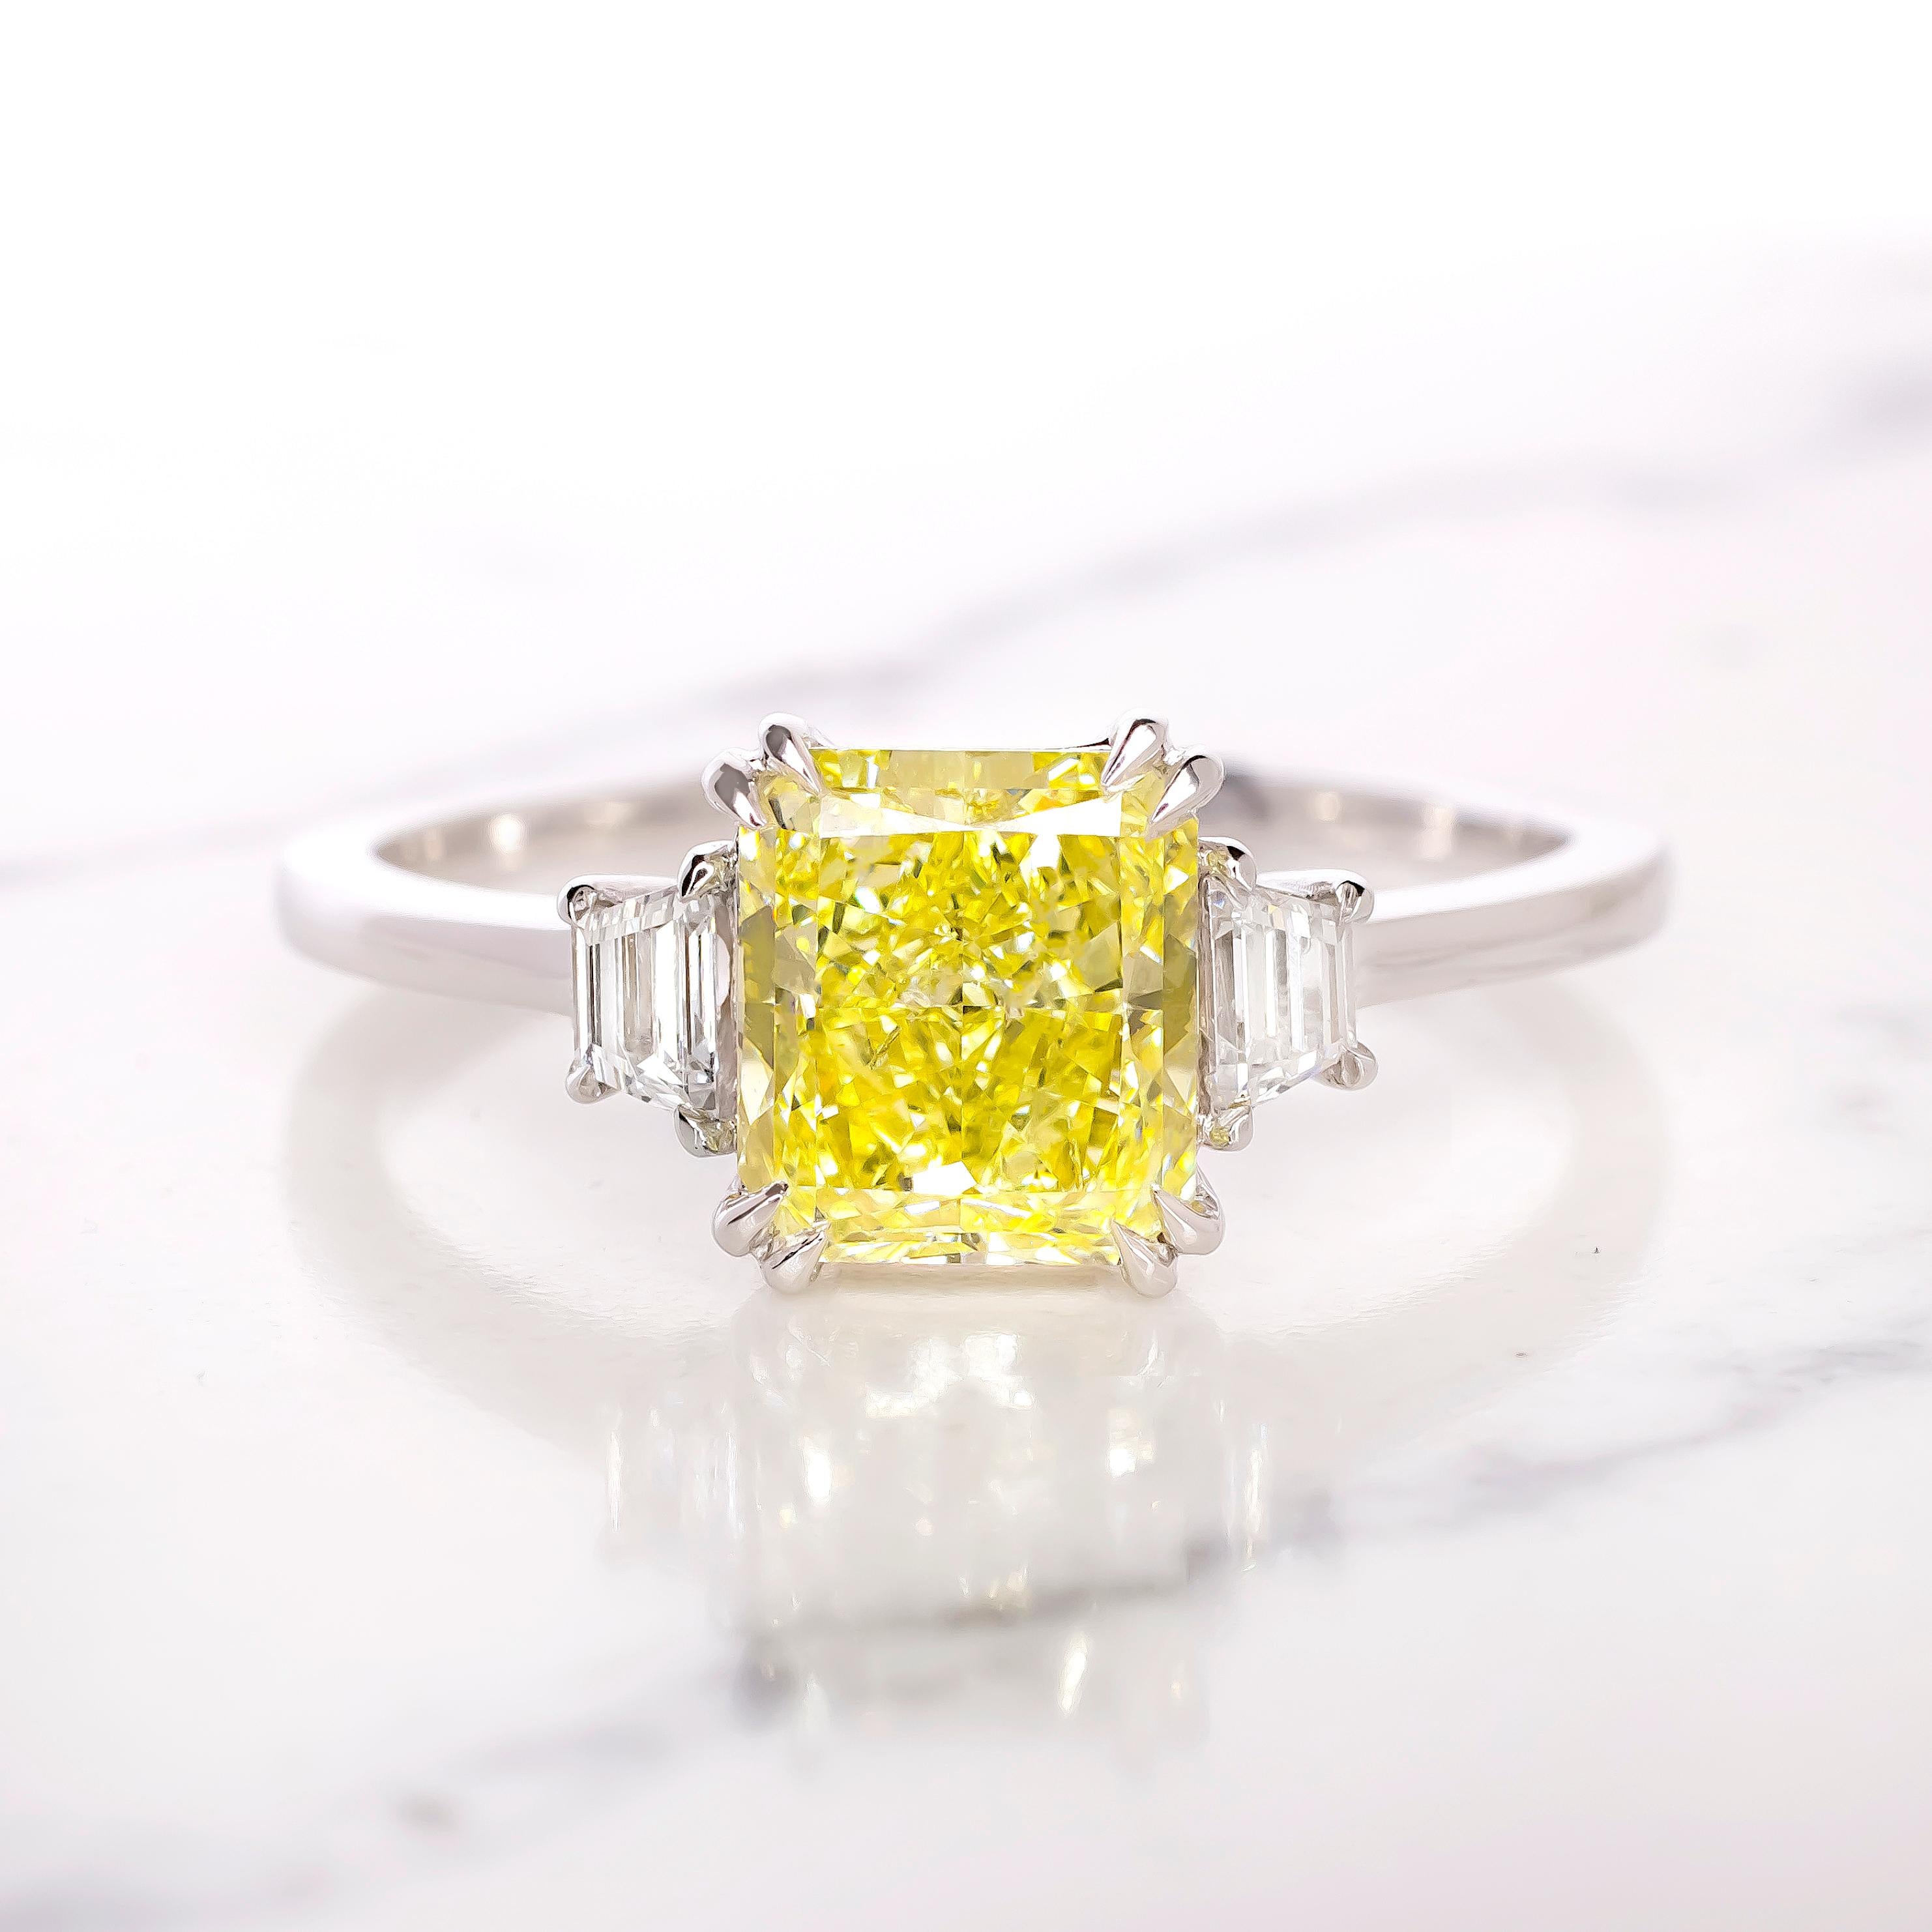 Dieser exquisite Ring von Antinori Di Sanpietro, einer renommierten italienischen Edelschmuckmarke, besticht durch einen farbigen Diamanten im Kissenschliff, der die Aufmerksamkeit auf sich zieht. 

Der zentrale Stein ist ein bemerkenswerter